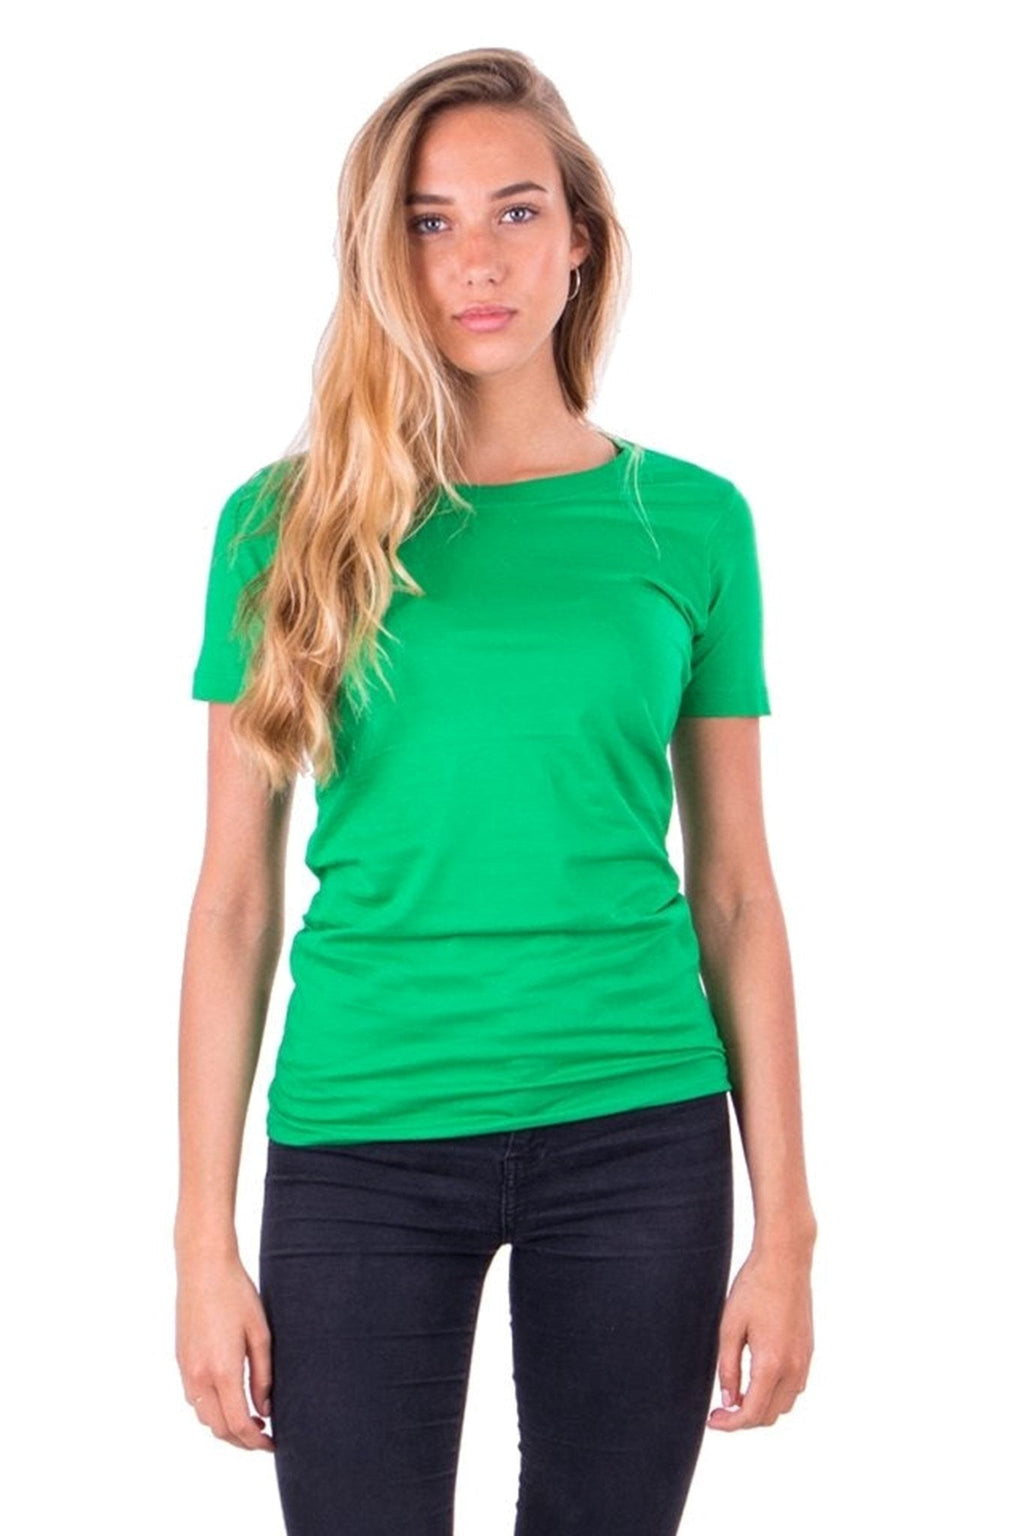 Eingebautes T -Shirt - grün